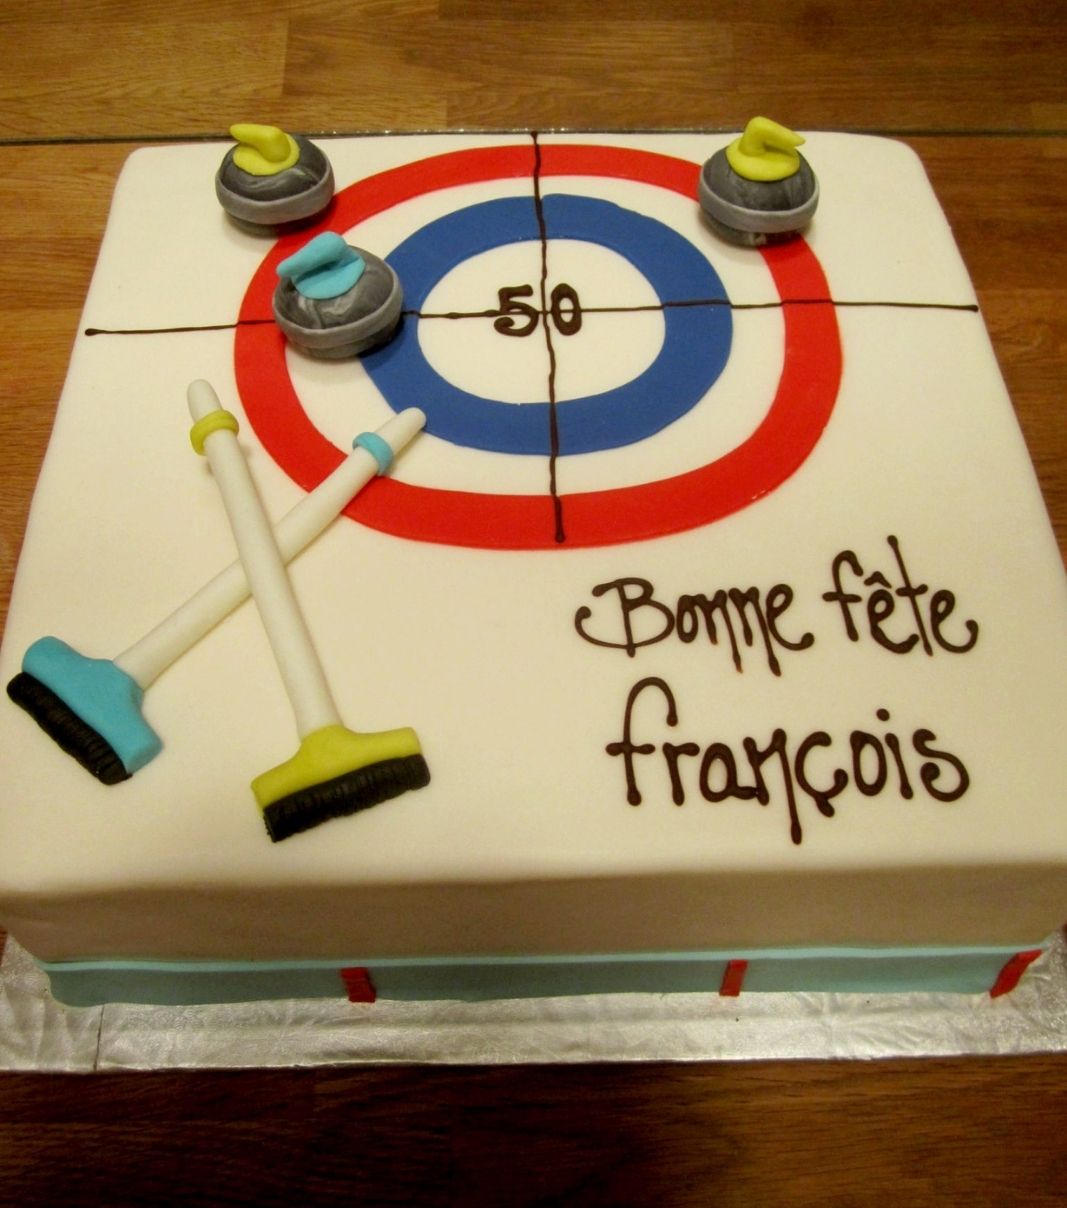 Gâteau d'anniversaire sur mesure des 50 ans de François: gâteau à thématique de curling avec une couverture en fondant et décoré de balais et de pierres de curling en fondant.